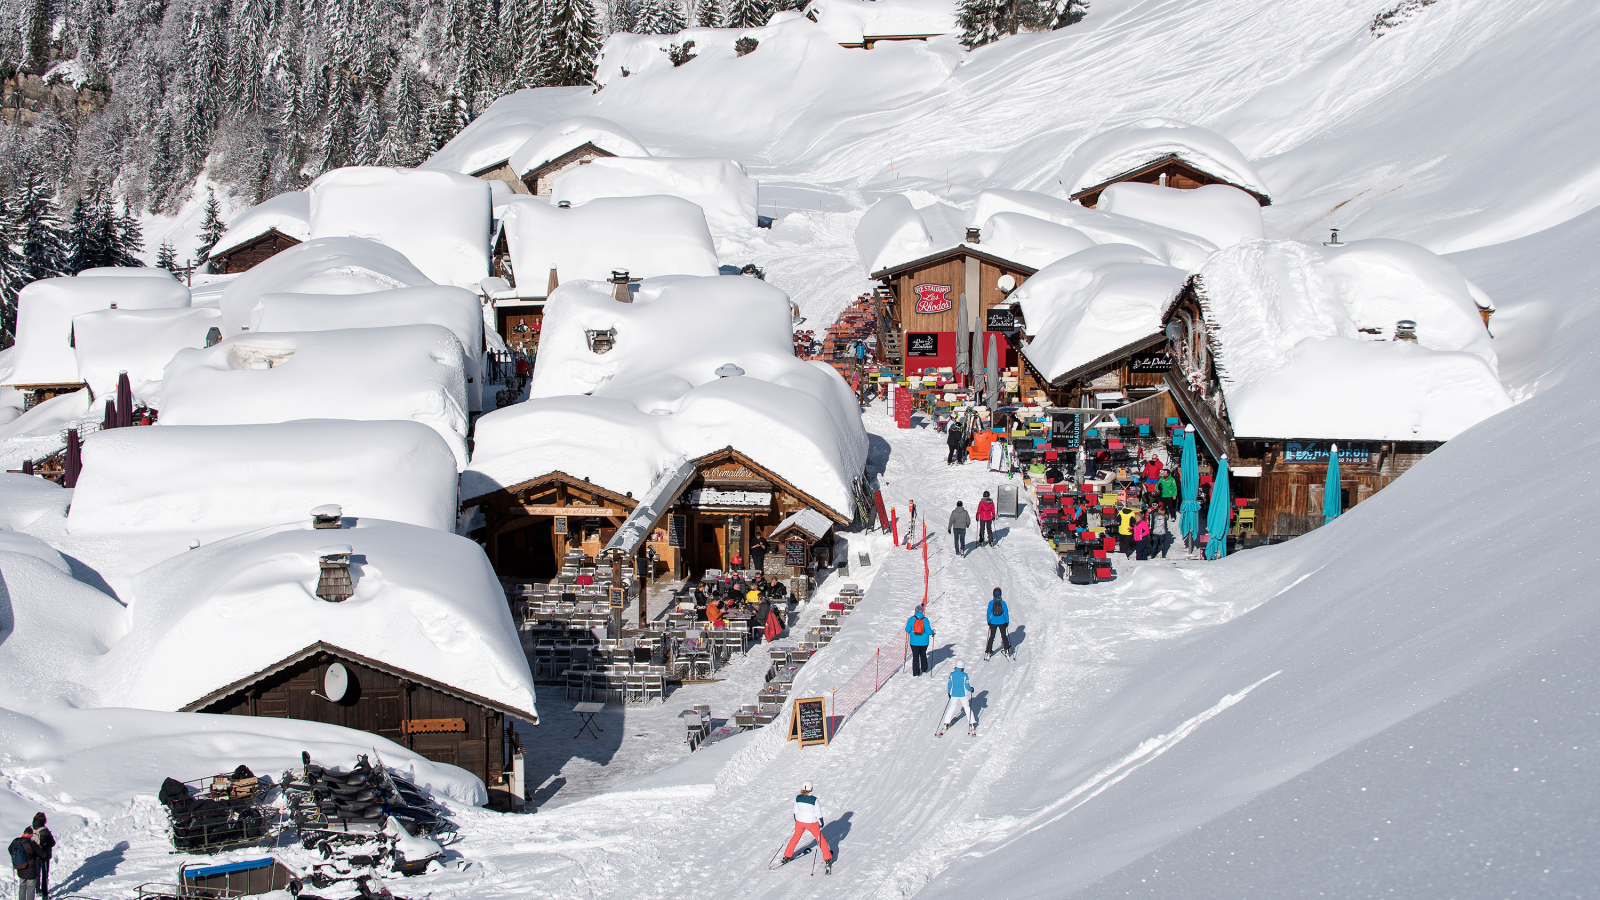 Traversée du village des Lindarets en ski